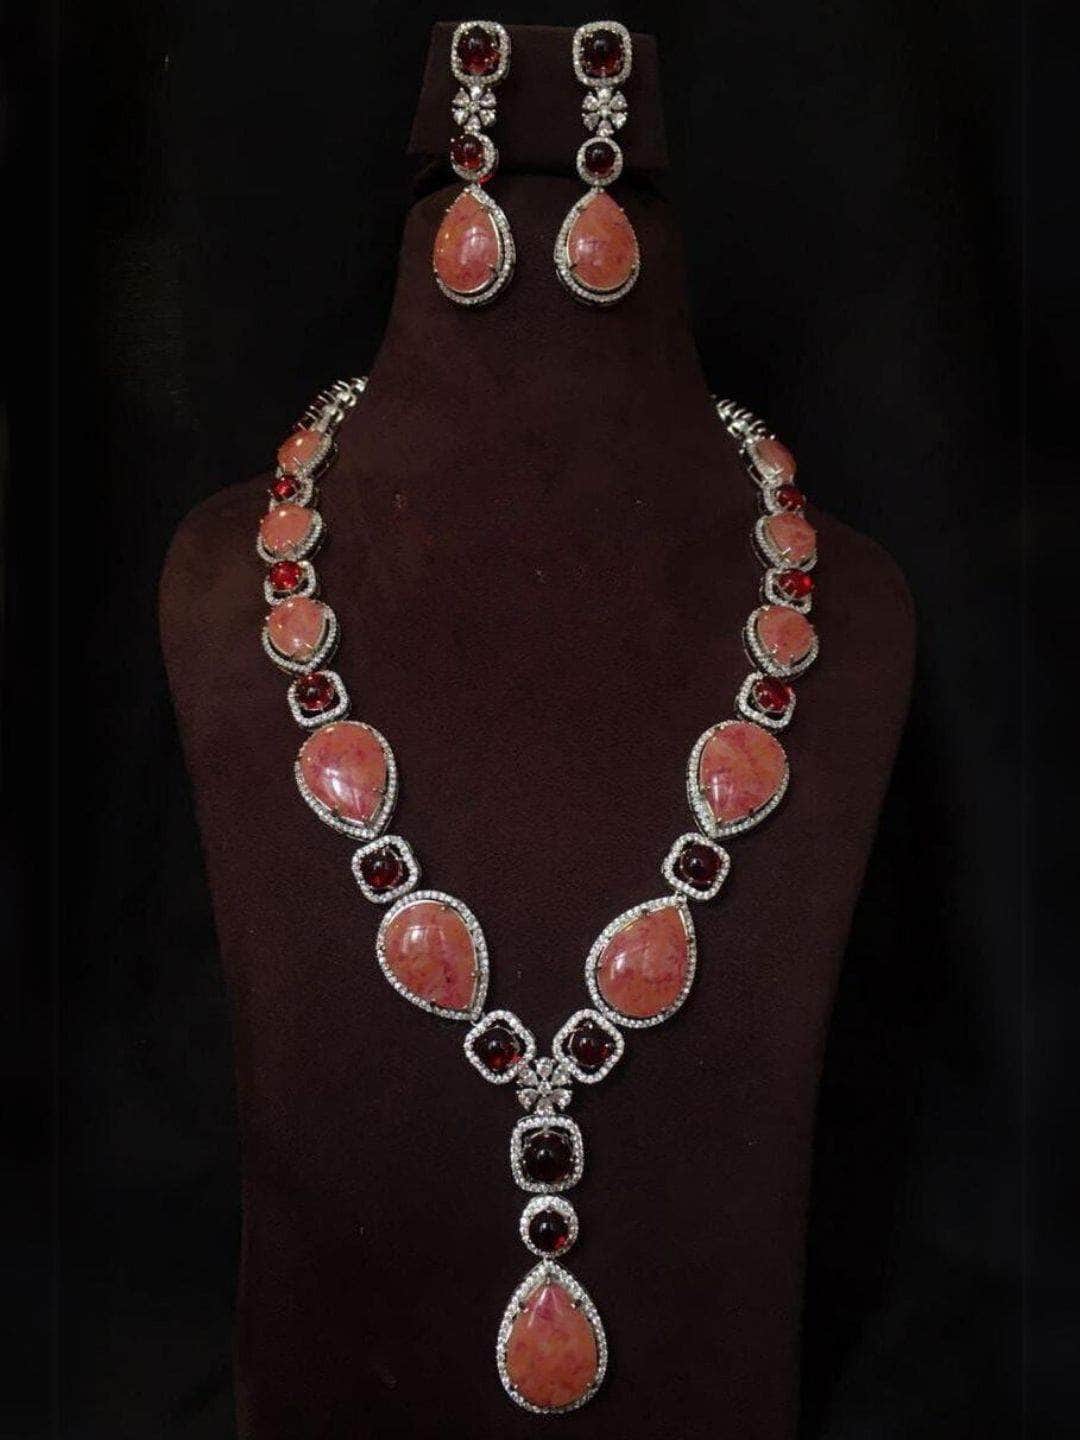 Ishhaara Monet Necklace With Teardrop Pendant